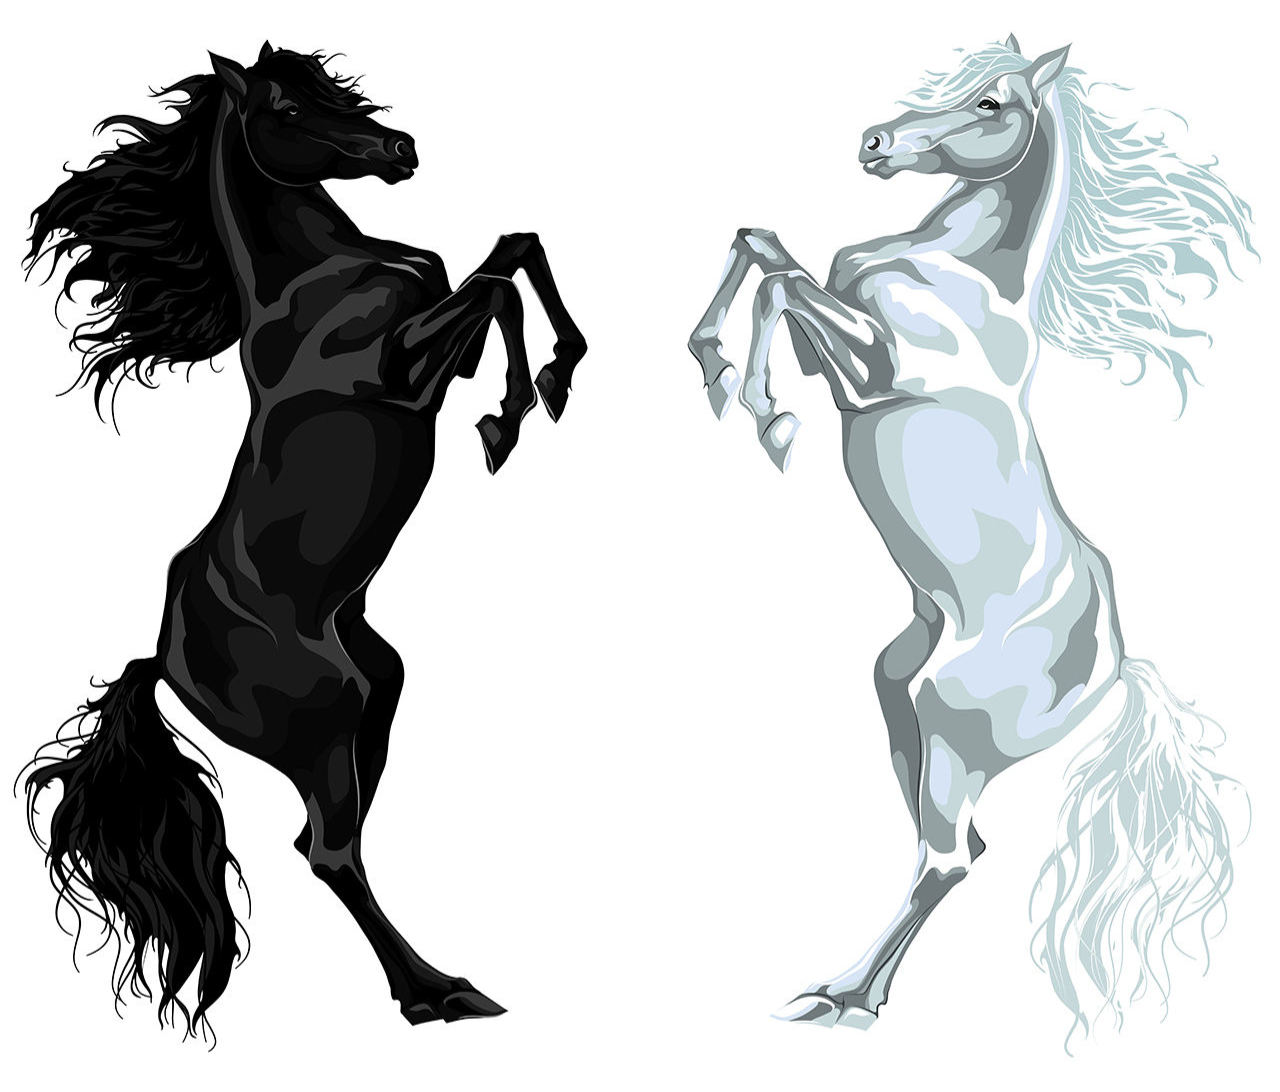 برچسب -استیکر- پوستر دیواری -صالسو آرت استیکر دیواری طرح black and white az اسب سفید و سیاه